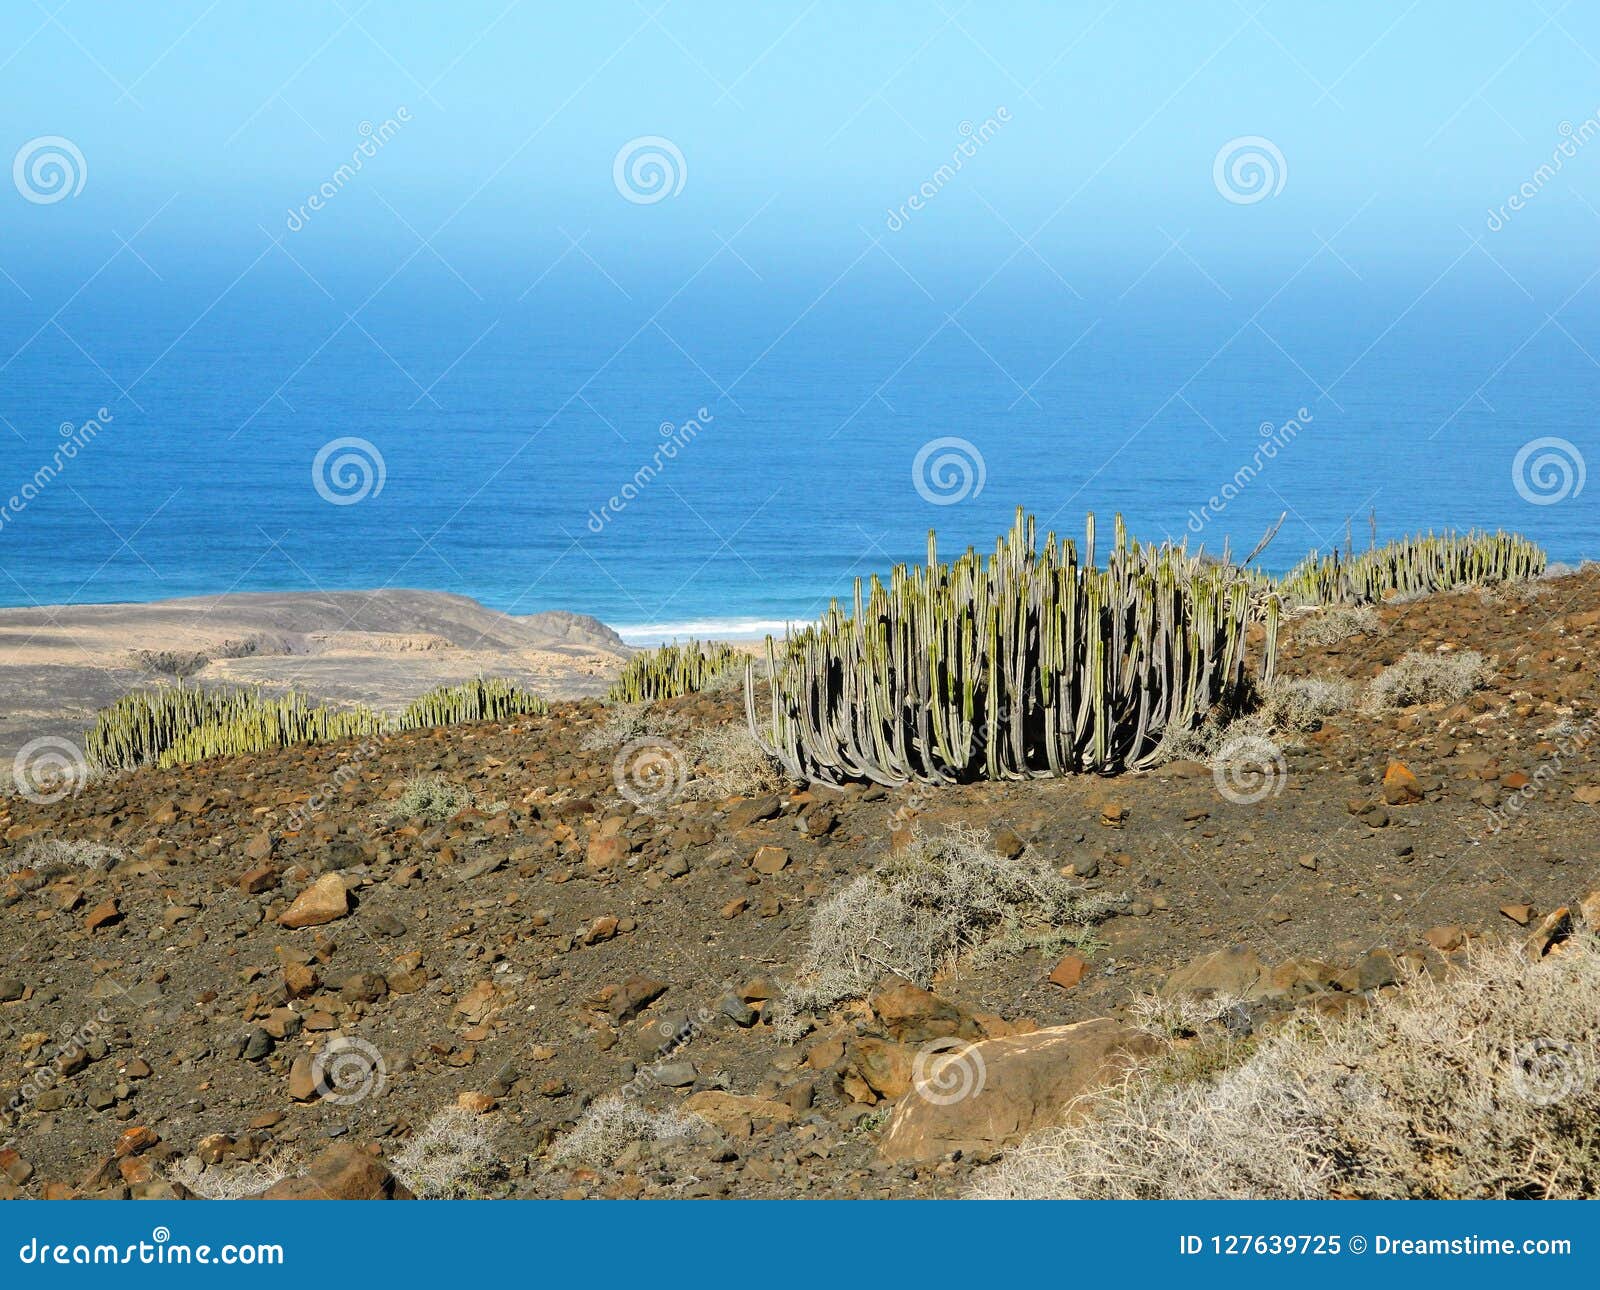 cactus frente al mar